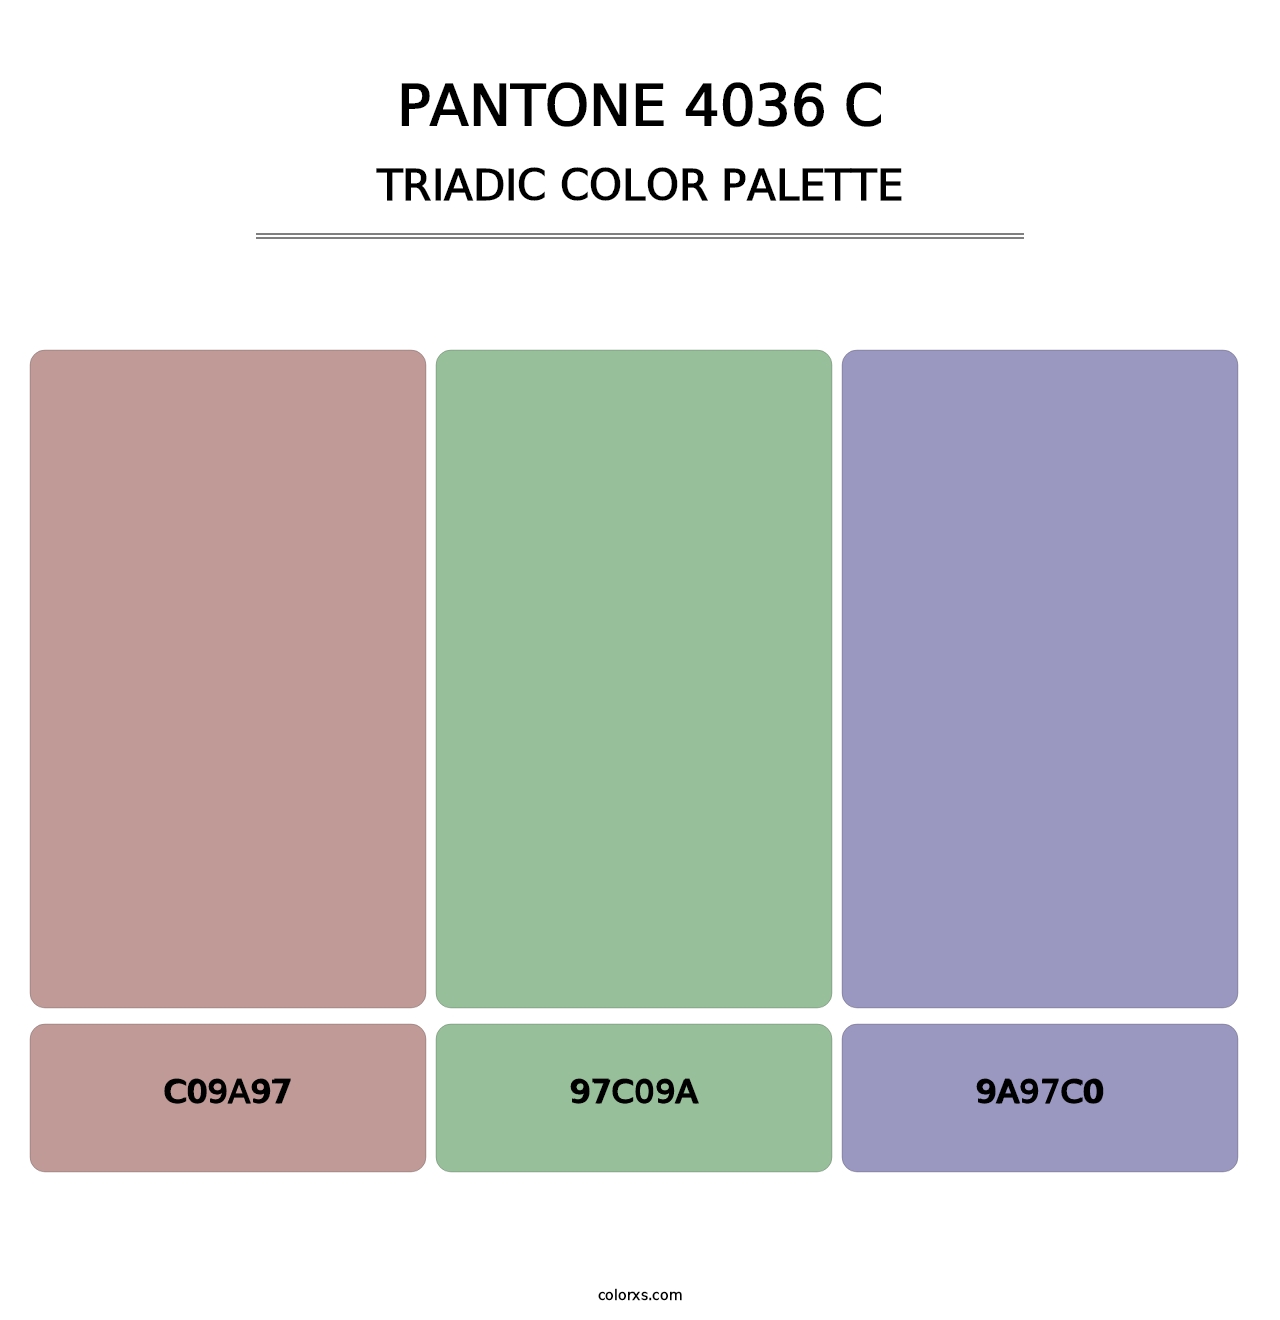 PANTONE 4036 C - Triadic Color Palette